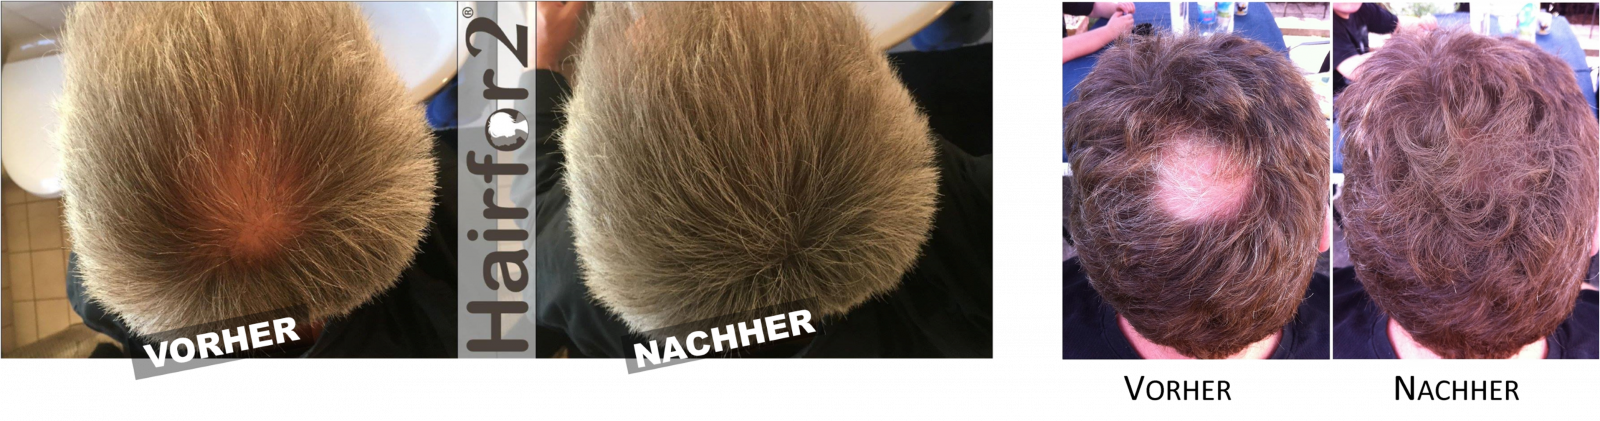 Hairfor2 Deutschland - Haarverdichtung + Haarauffüllung Hairfor2 - der  sensationelle Haarauffüller und Haarverdichter